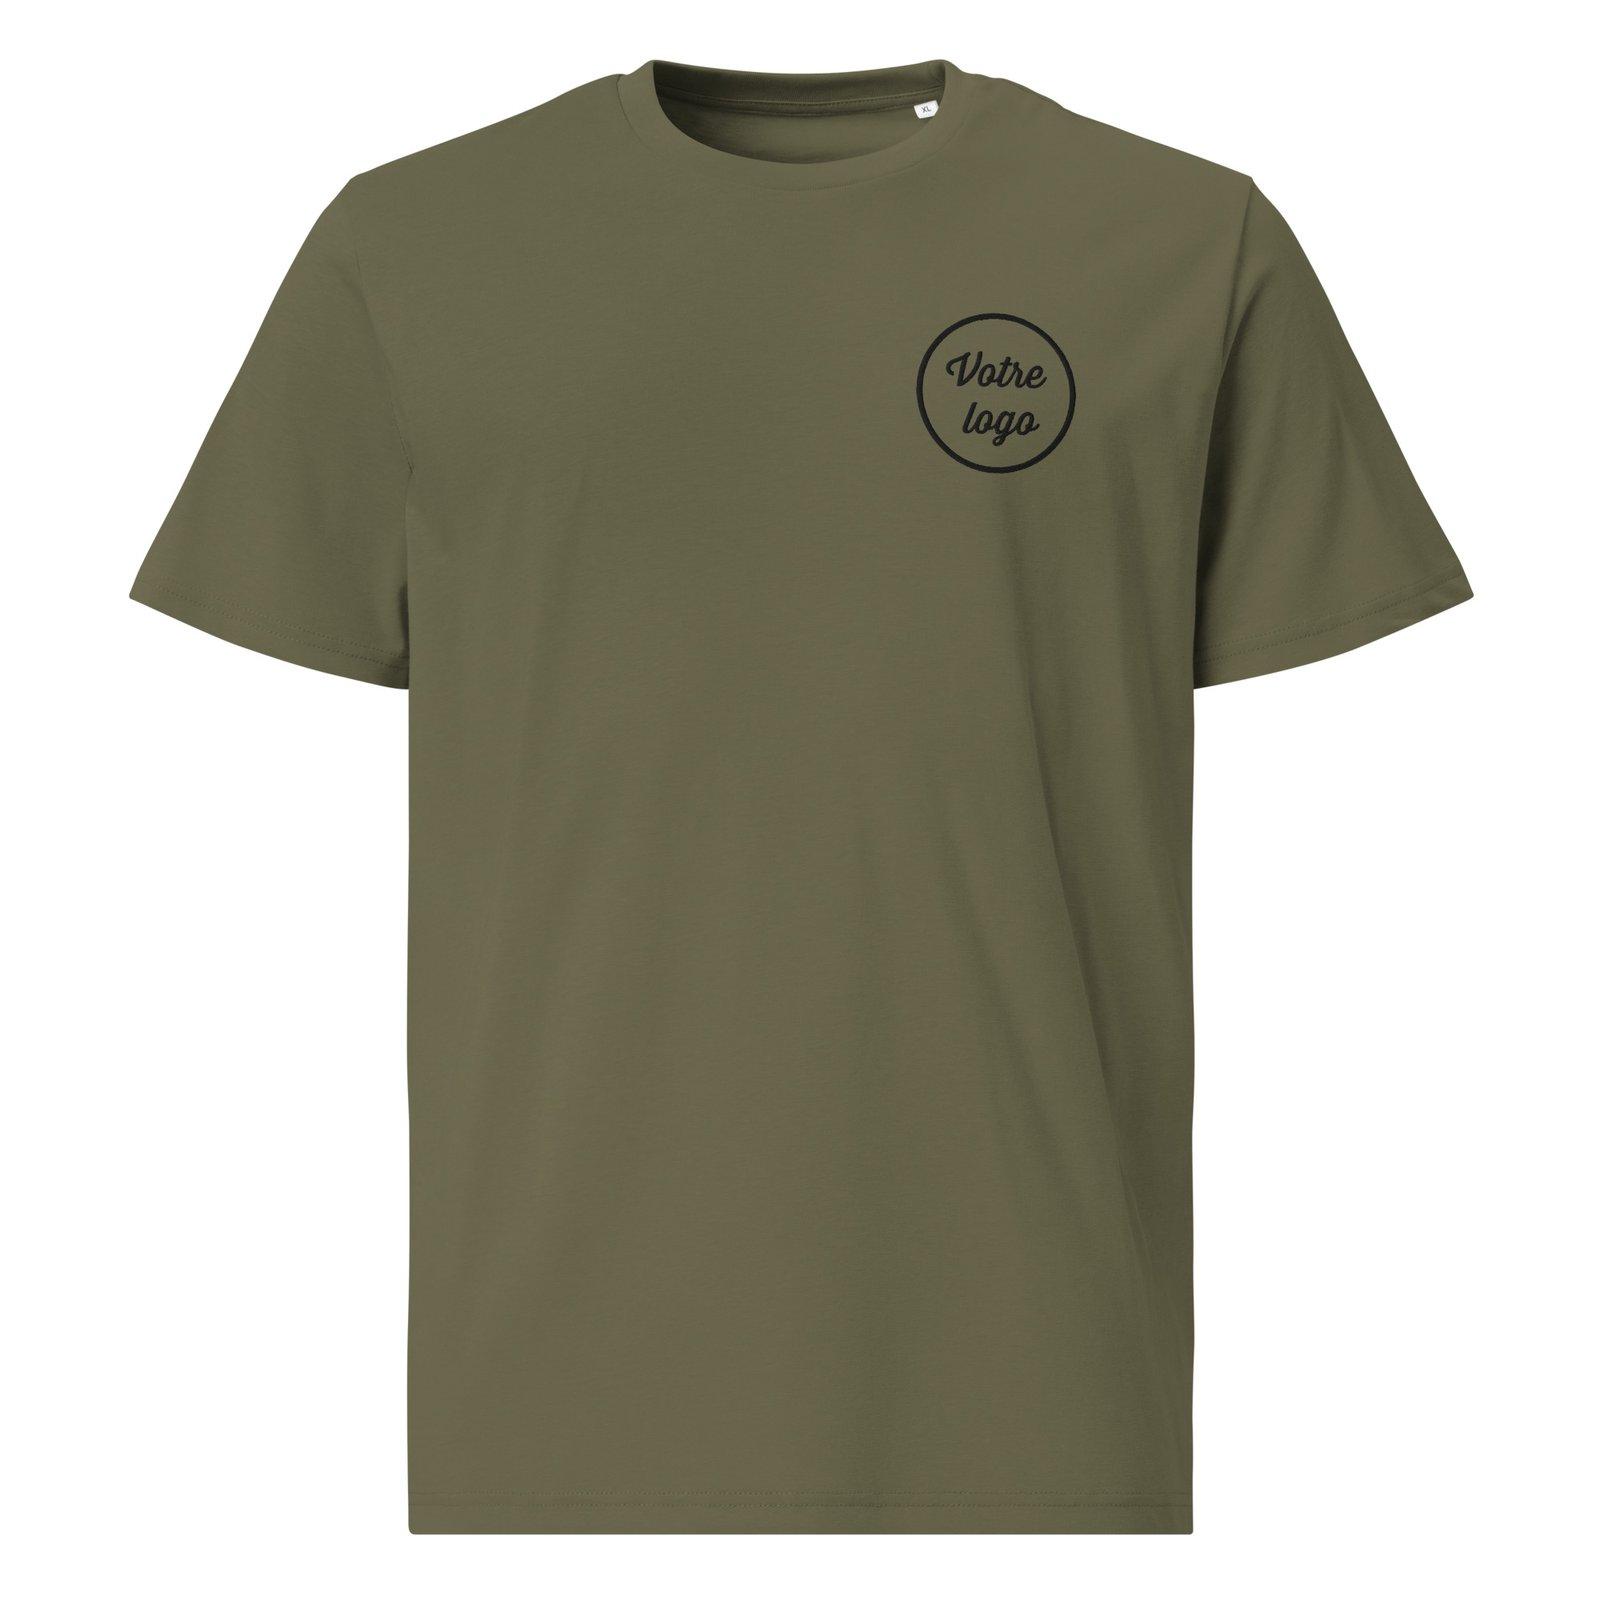 Privé : T-shirt personnalisé logo brodé – Coton bio